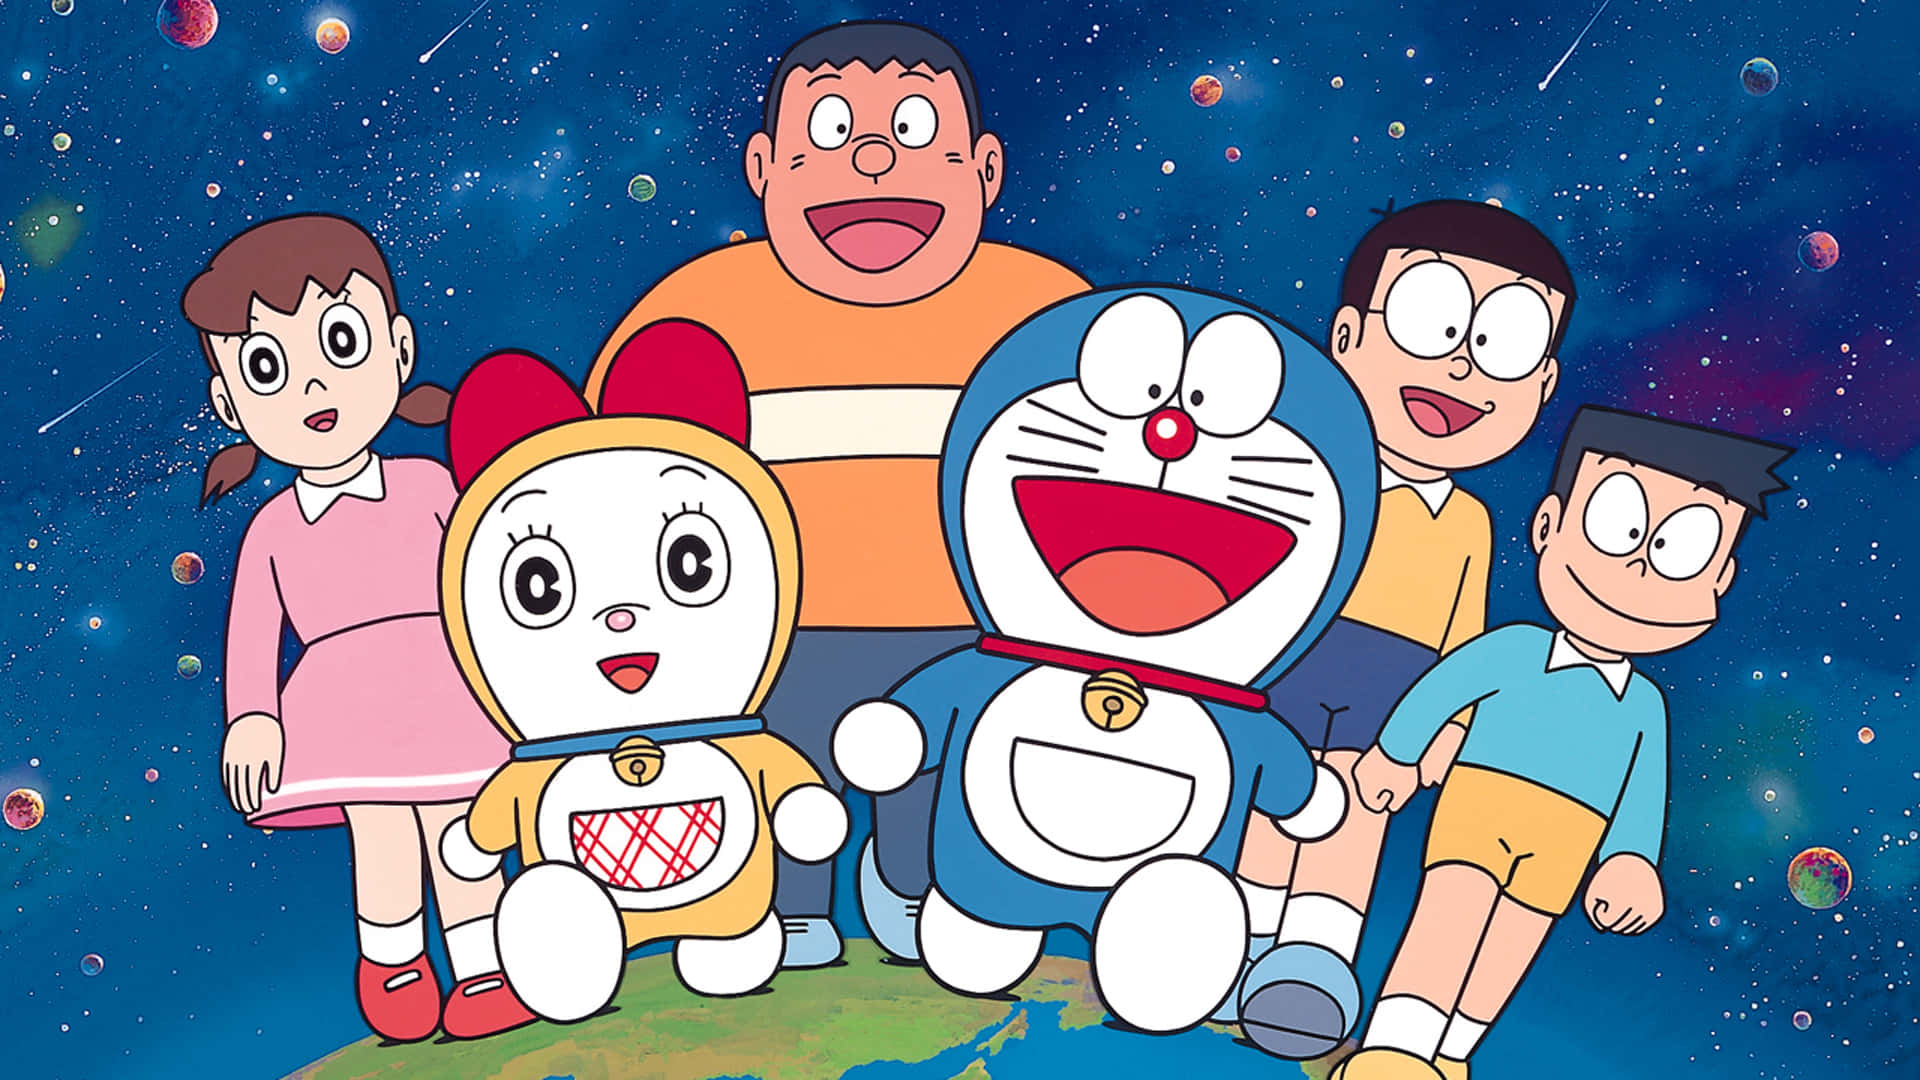 Imagende Grupo De Amigos Con Doraemon